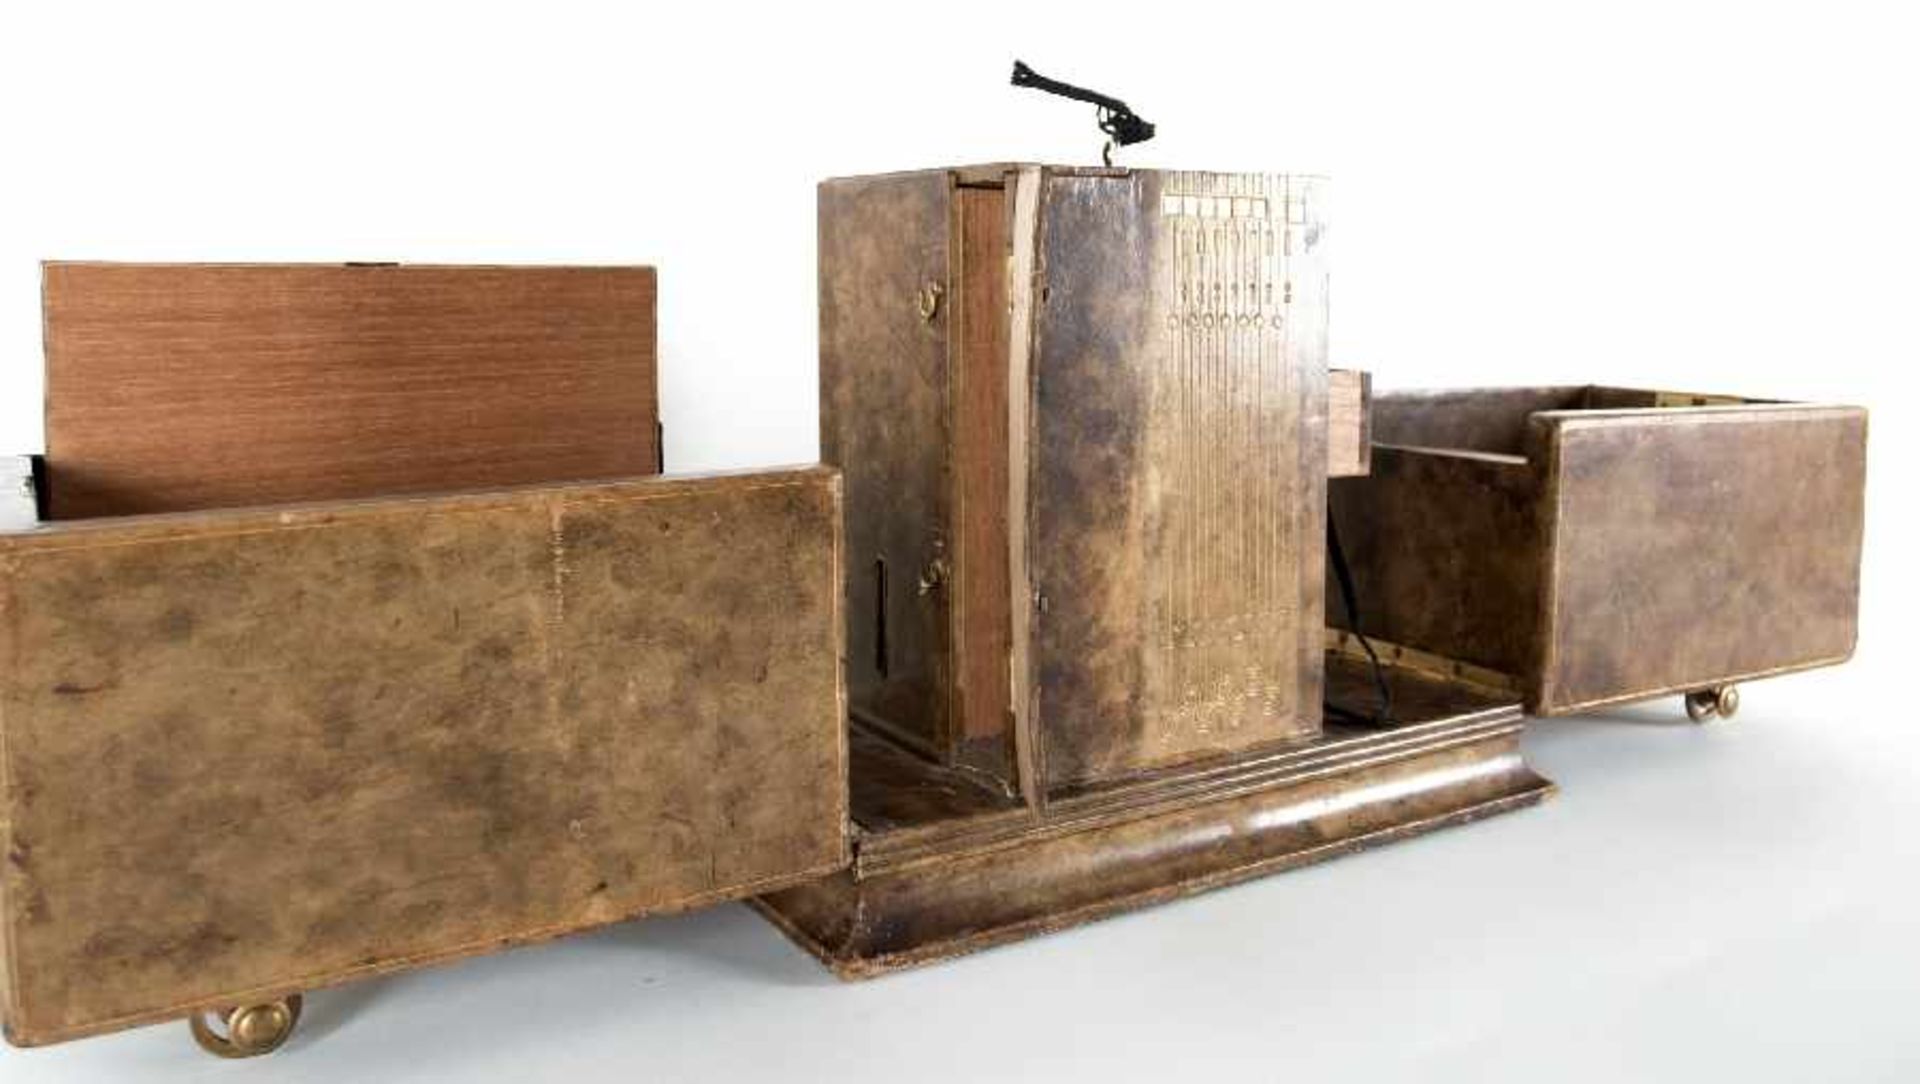 Wiener Werkstätten zugeschr.Kabinettkasten (Zigarrenkasten?)Holz, lederbezogen, mit Messinggriffen - Bild 5 aus 5